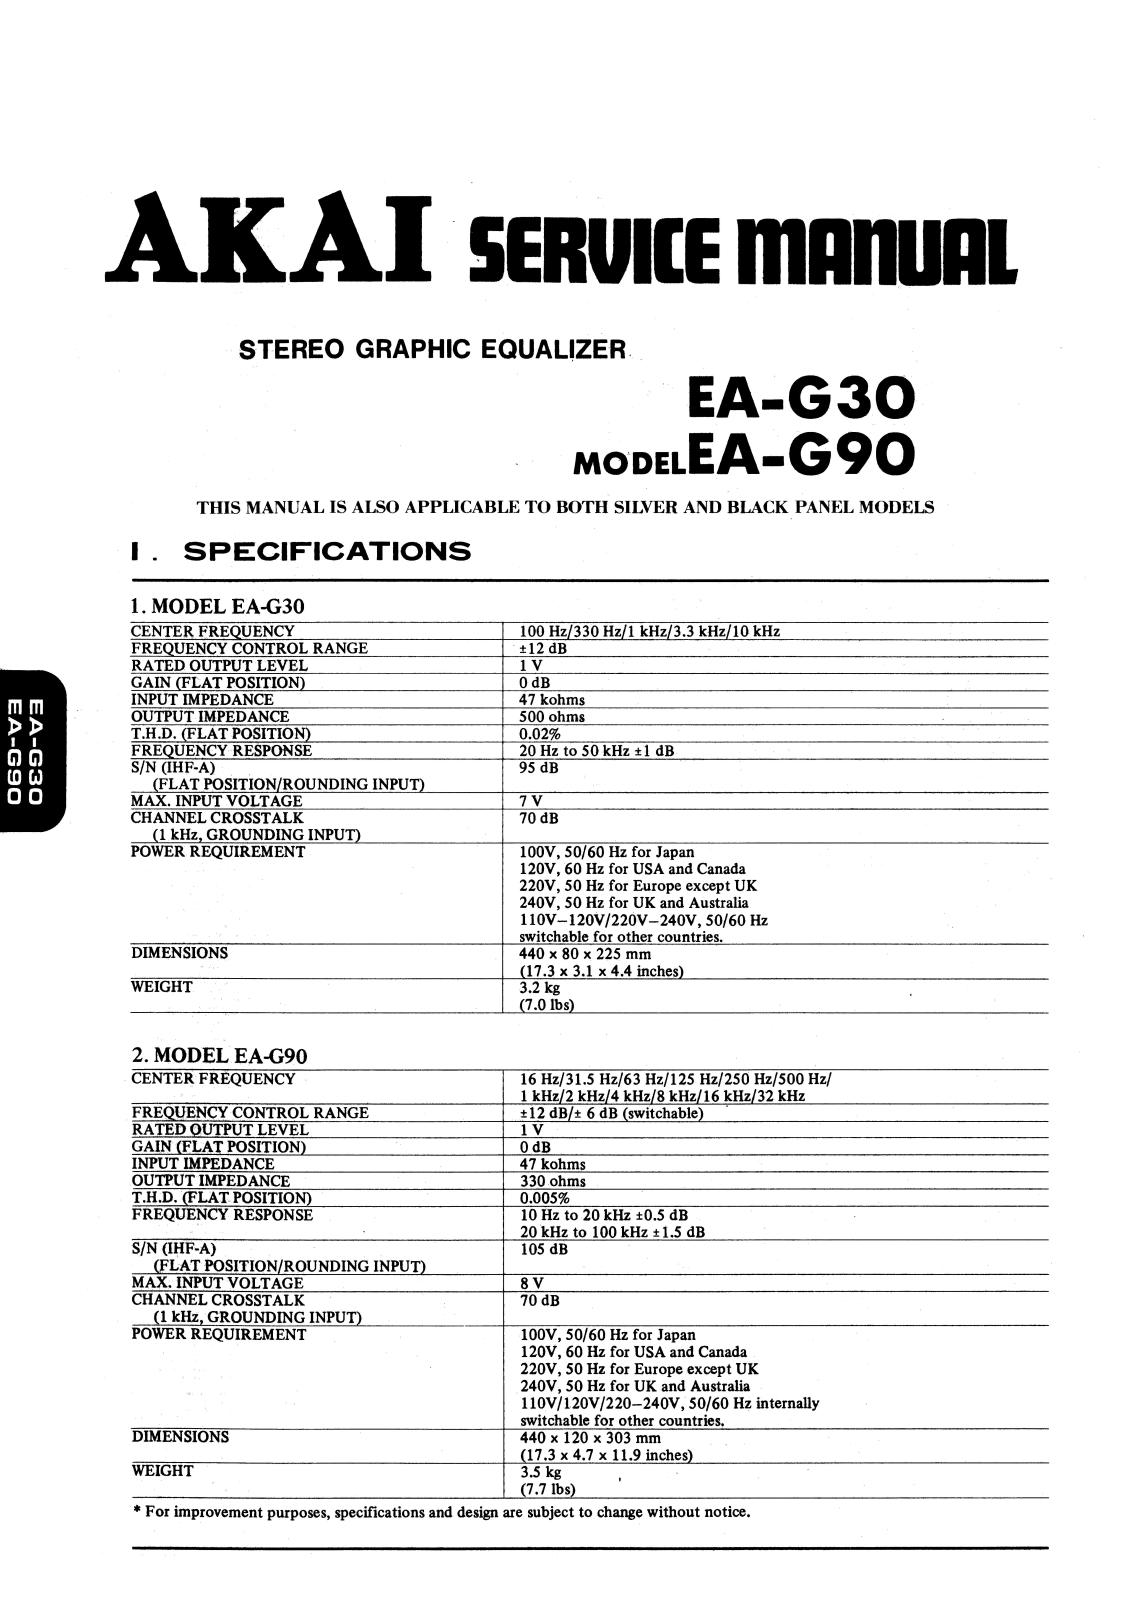 Akai EAG-30, EAG-90 Service manual